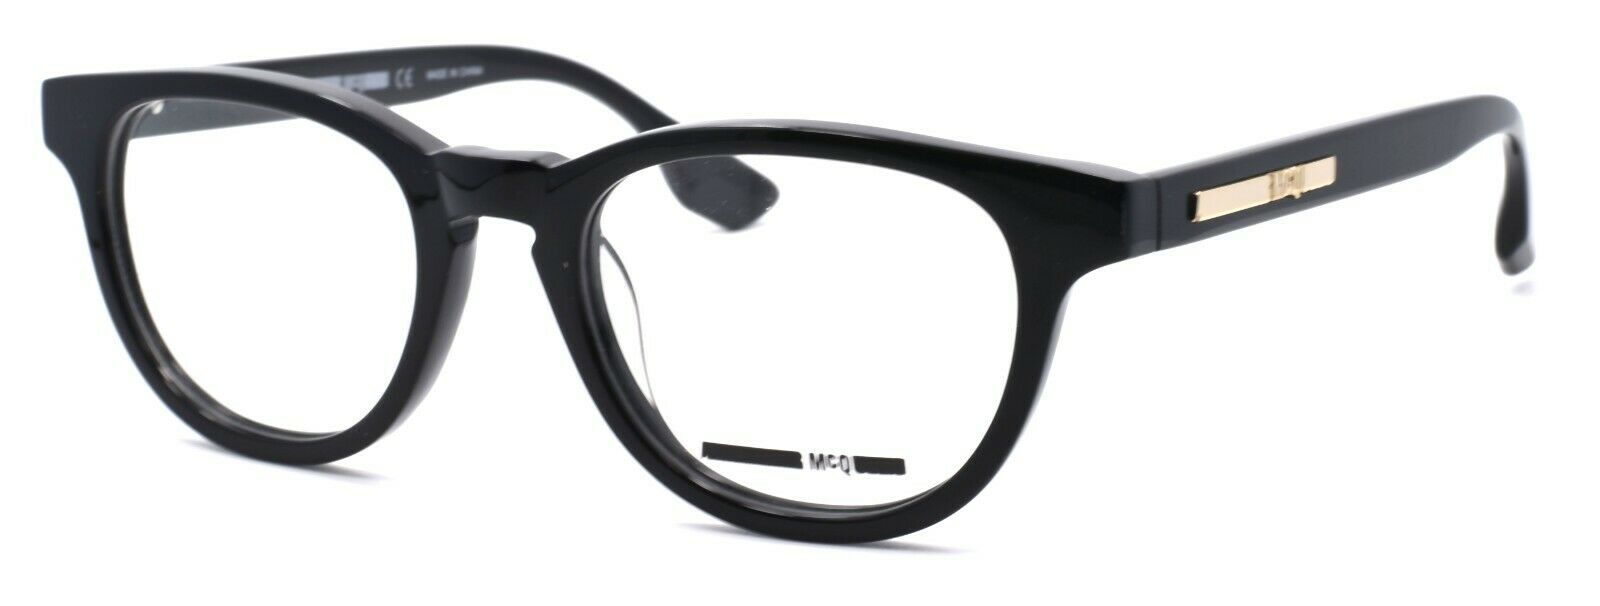 1-McQ Alexander McQueen MQ0033O 001 Unisex Eyeglasses Frames 49-20-140 Black-889652011493-IKSpecs